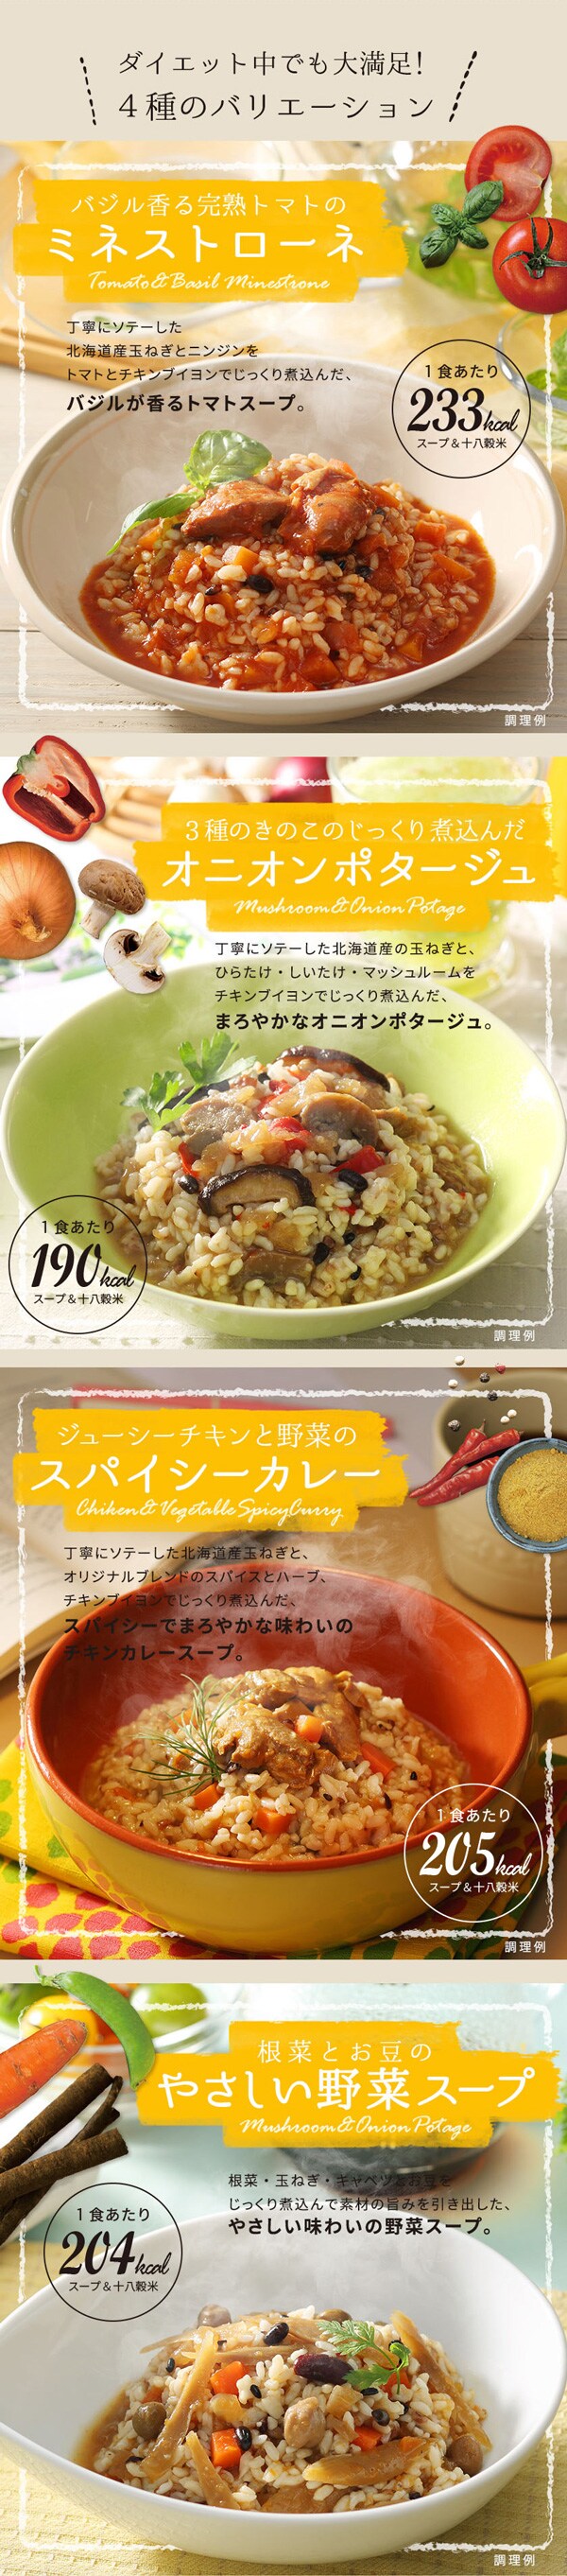 食入 十八穀米のスープリゾットを税込 送料込でお試し サンプル百貨店 Super Foods Japan